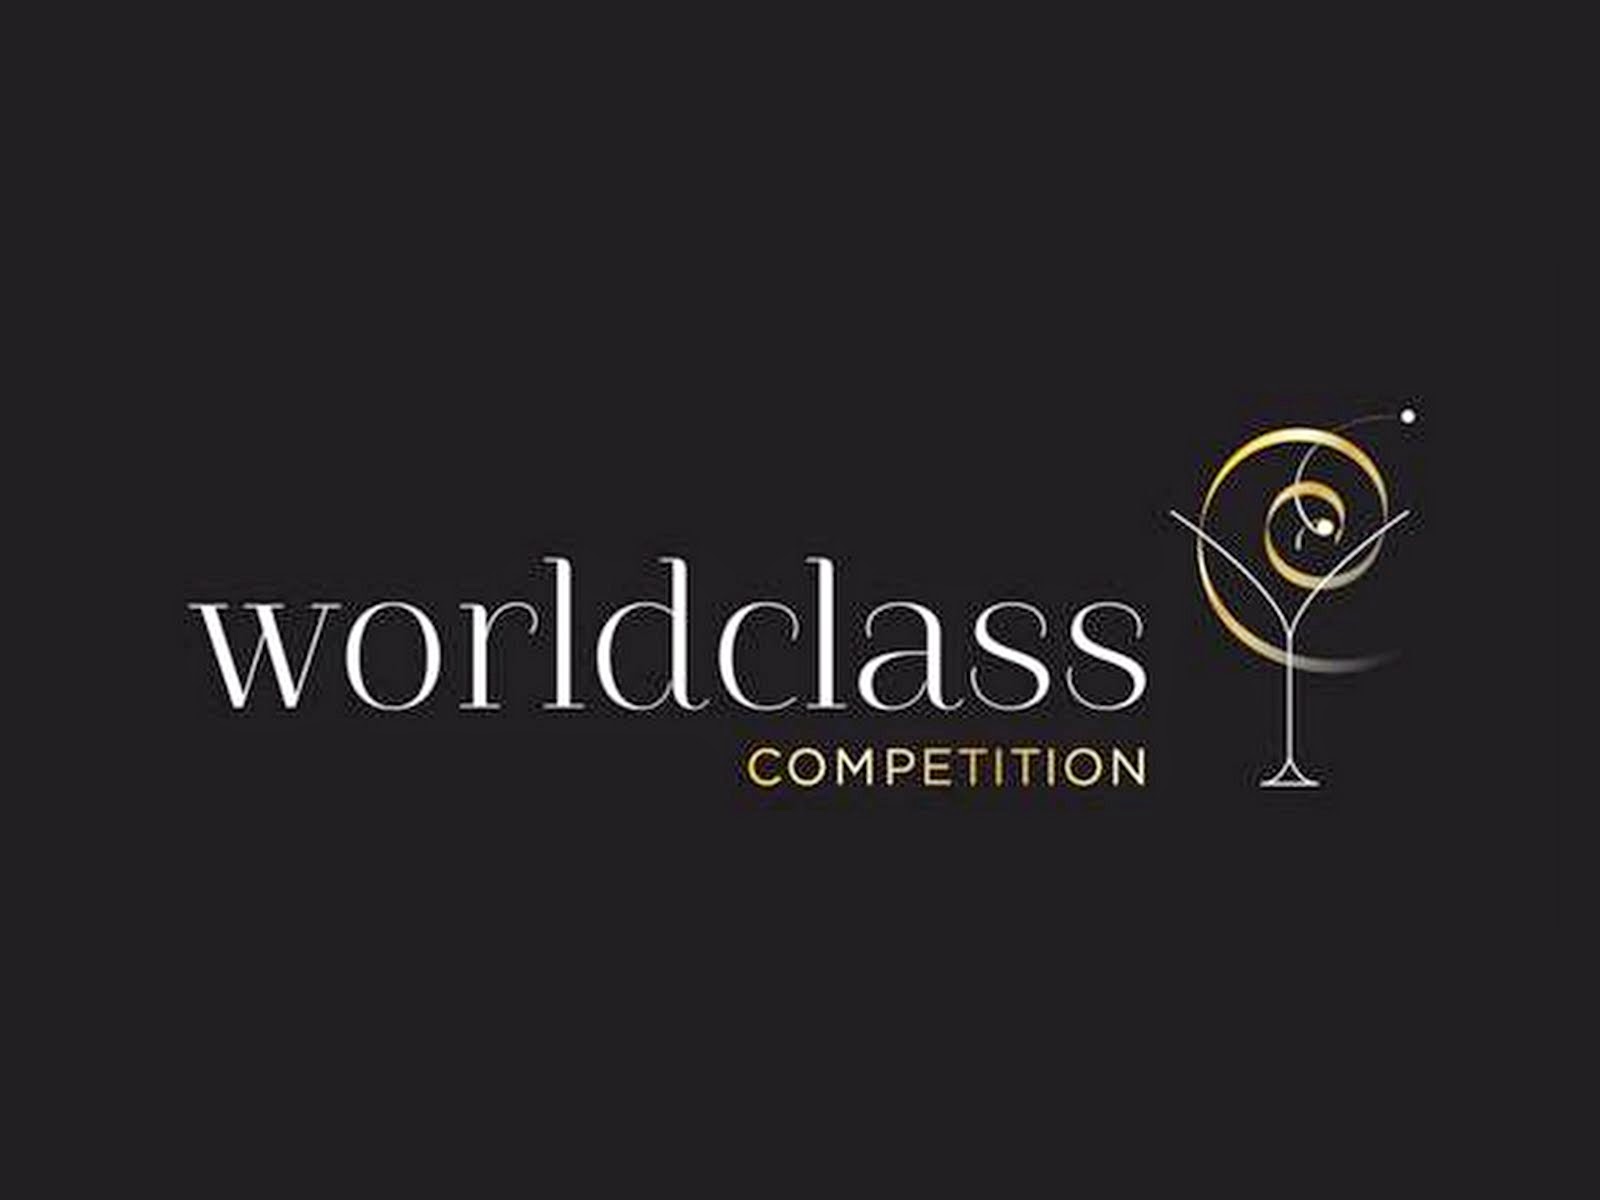 #WorldClass2015